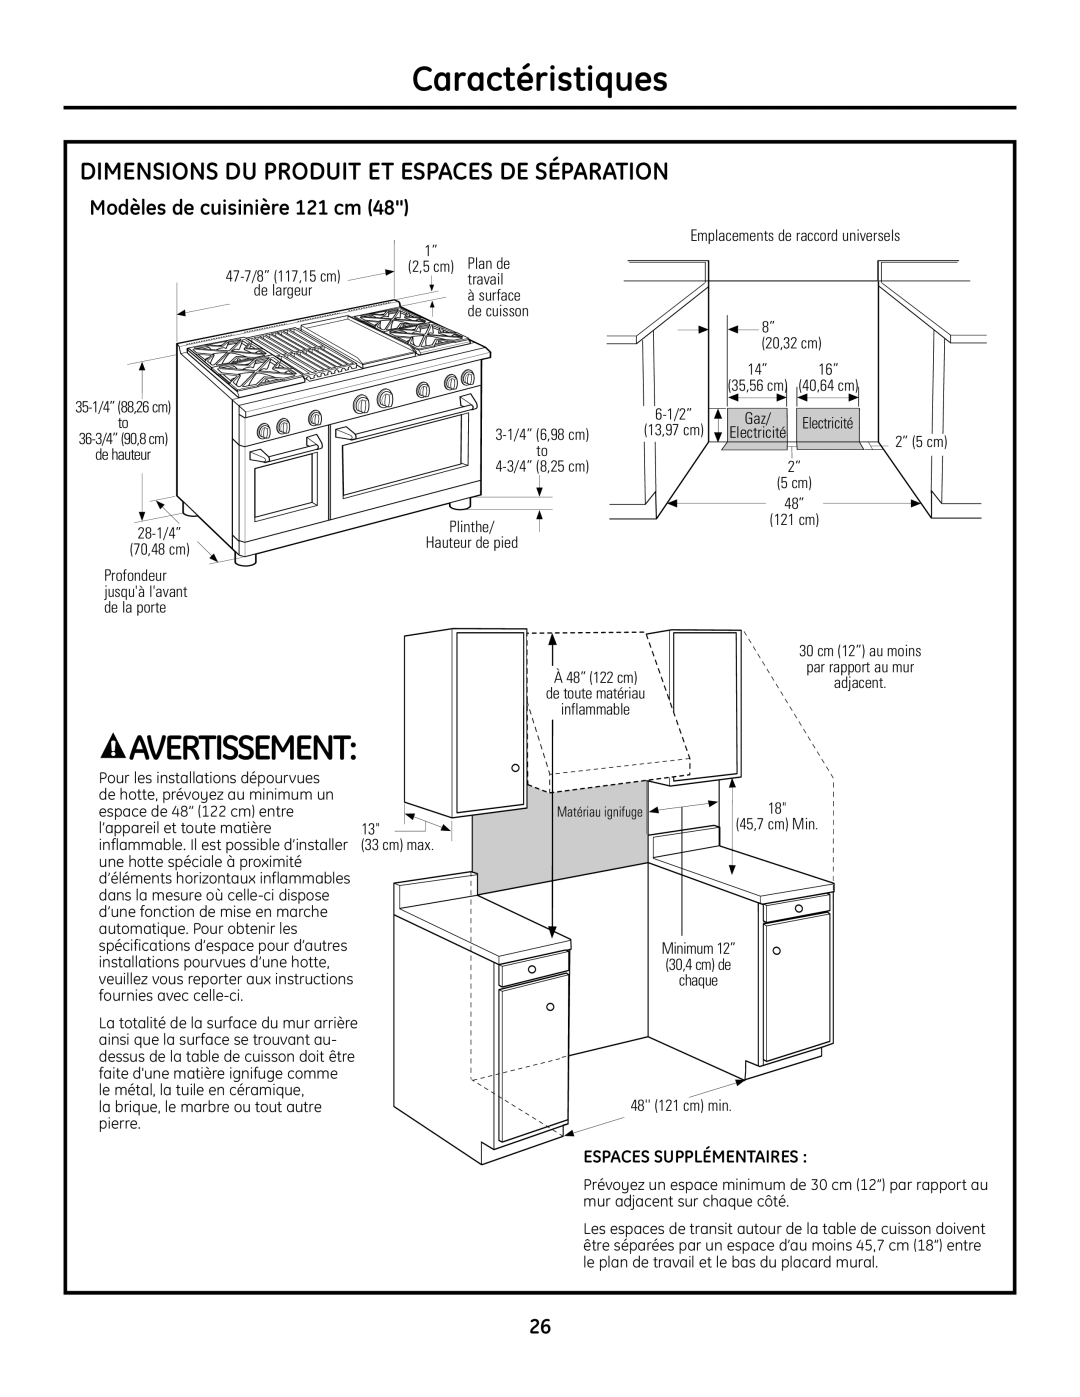 GE Monogram Range Dimensions Du Produit Et Espaces De Séparation, Modèles de cuisinière 121 cm, Caractéristiques 